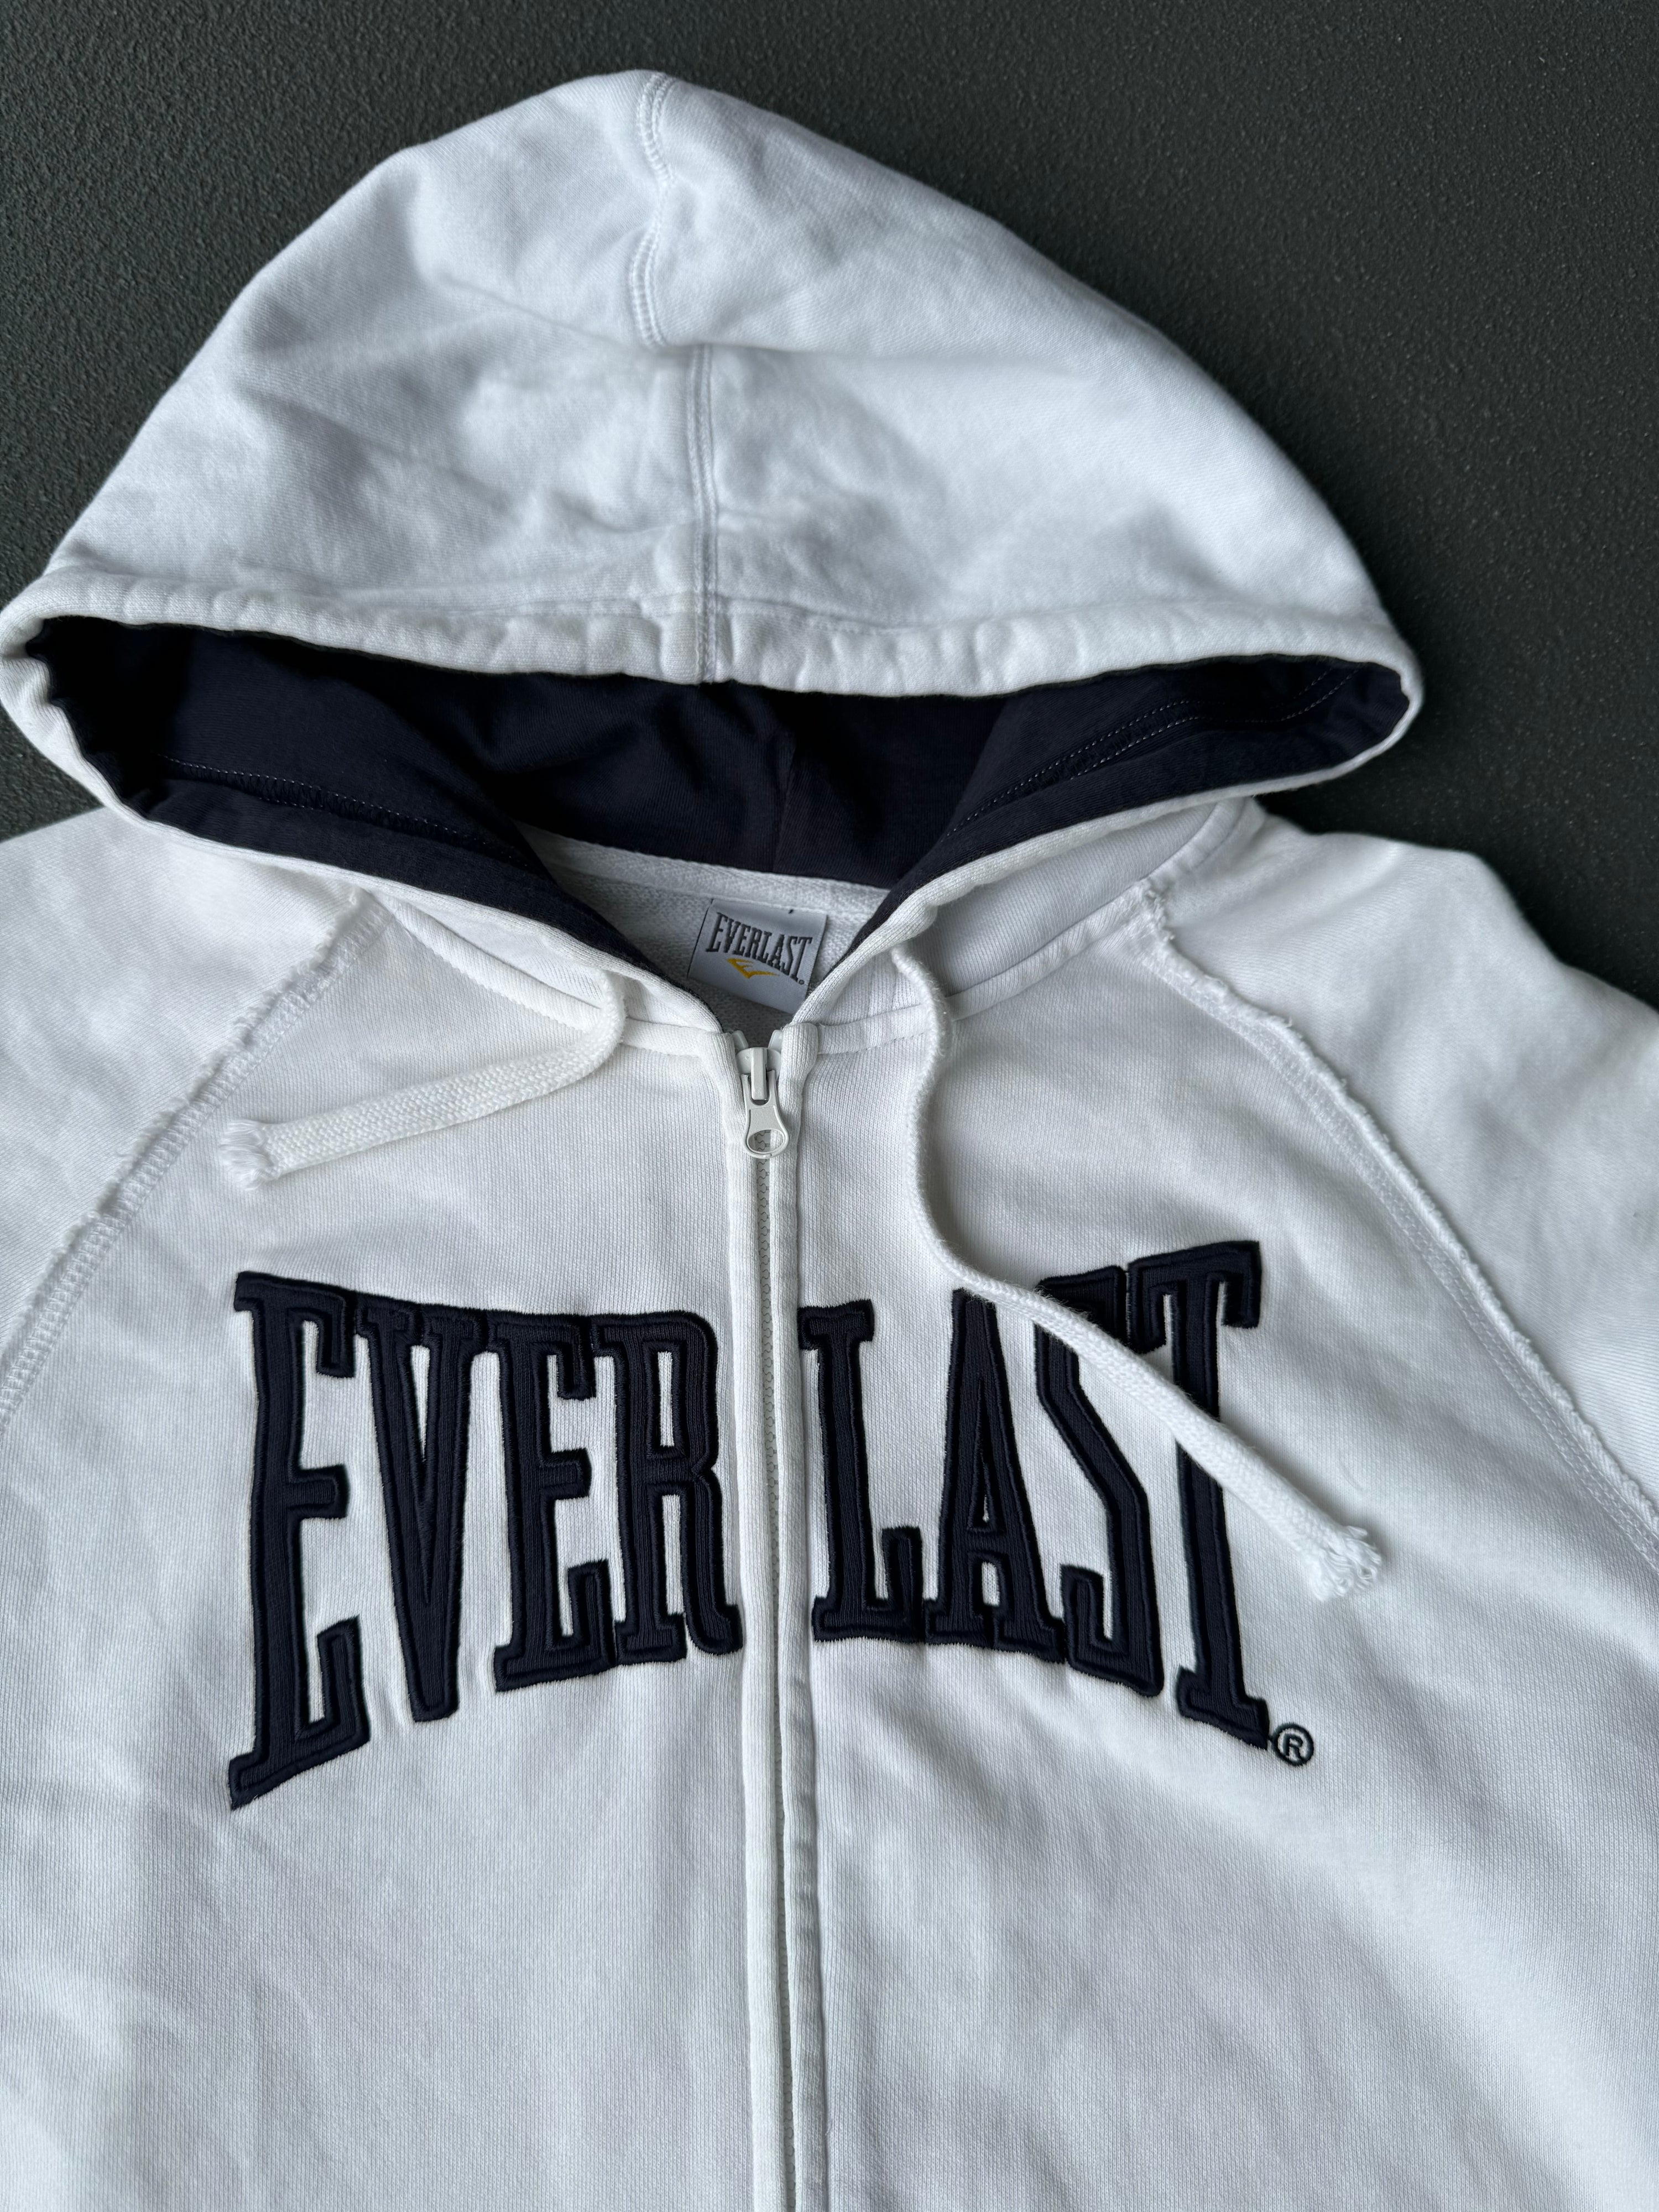 Early 2000s Everlast Zip Hooded Sweat Jacket (L)